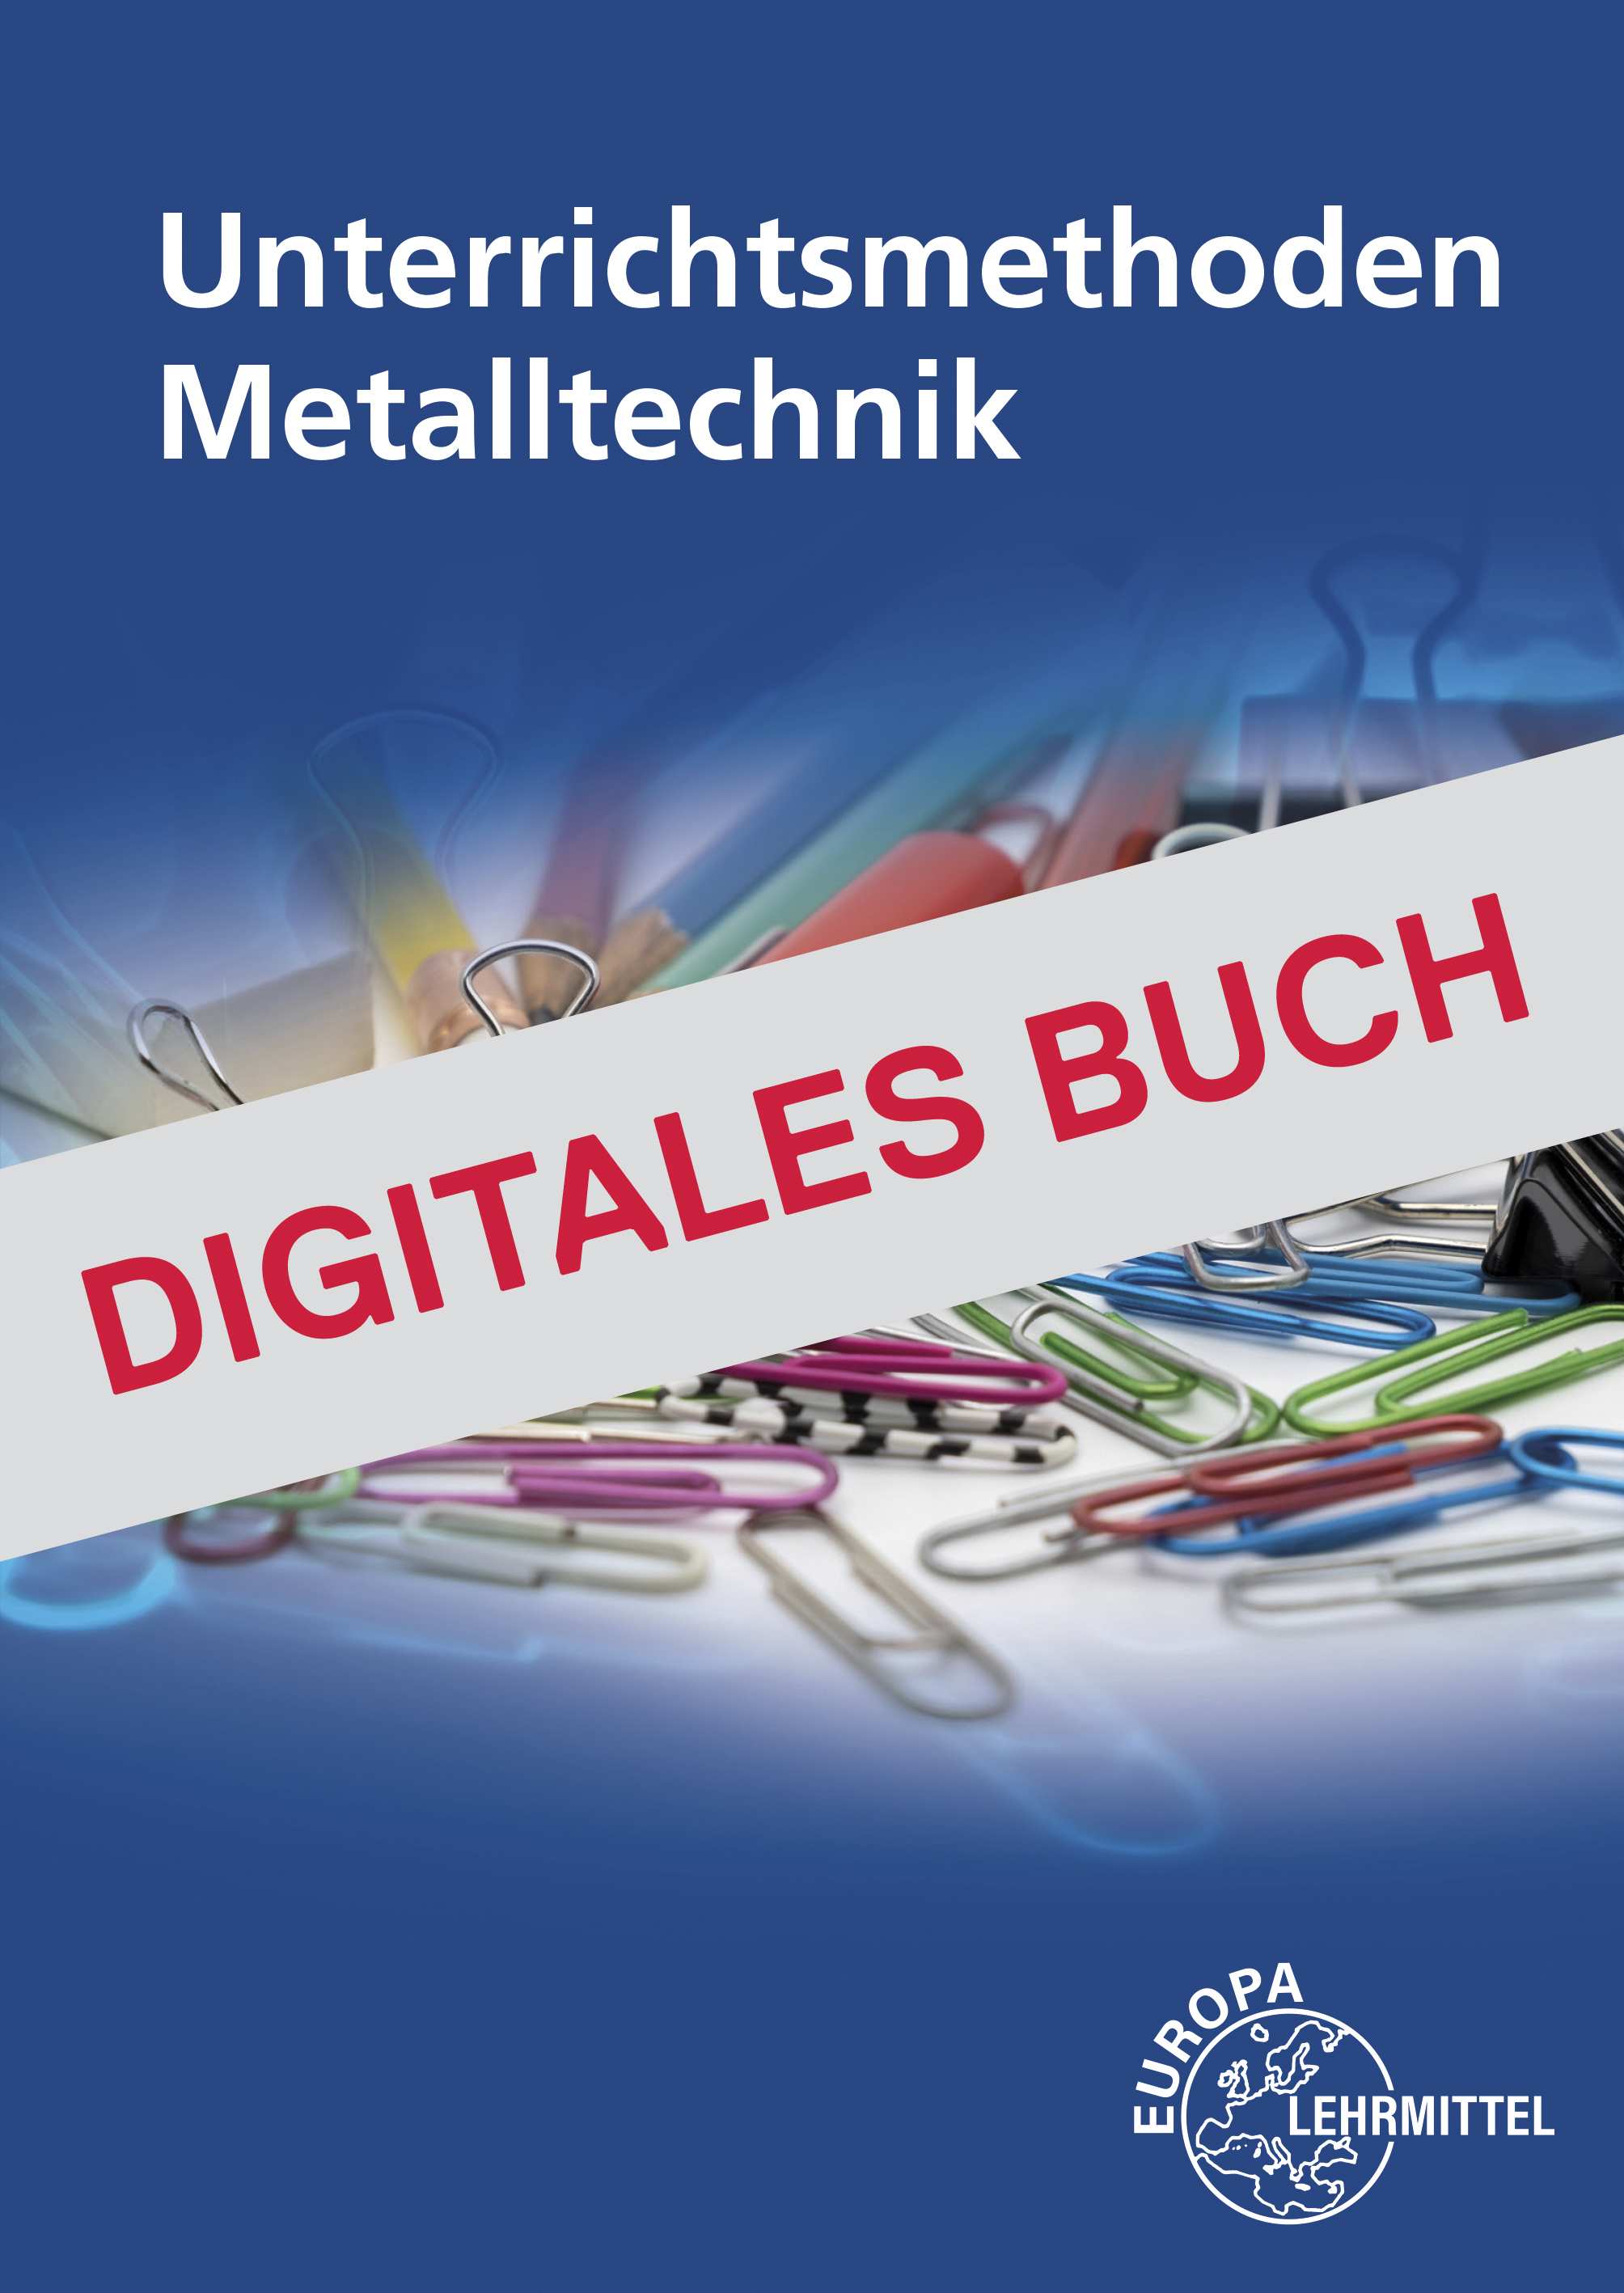 Unterrichtsmethoden Metalltechnik - Digitales Buch